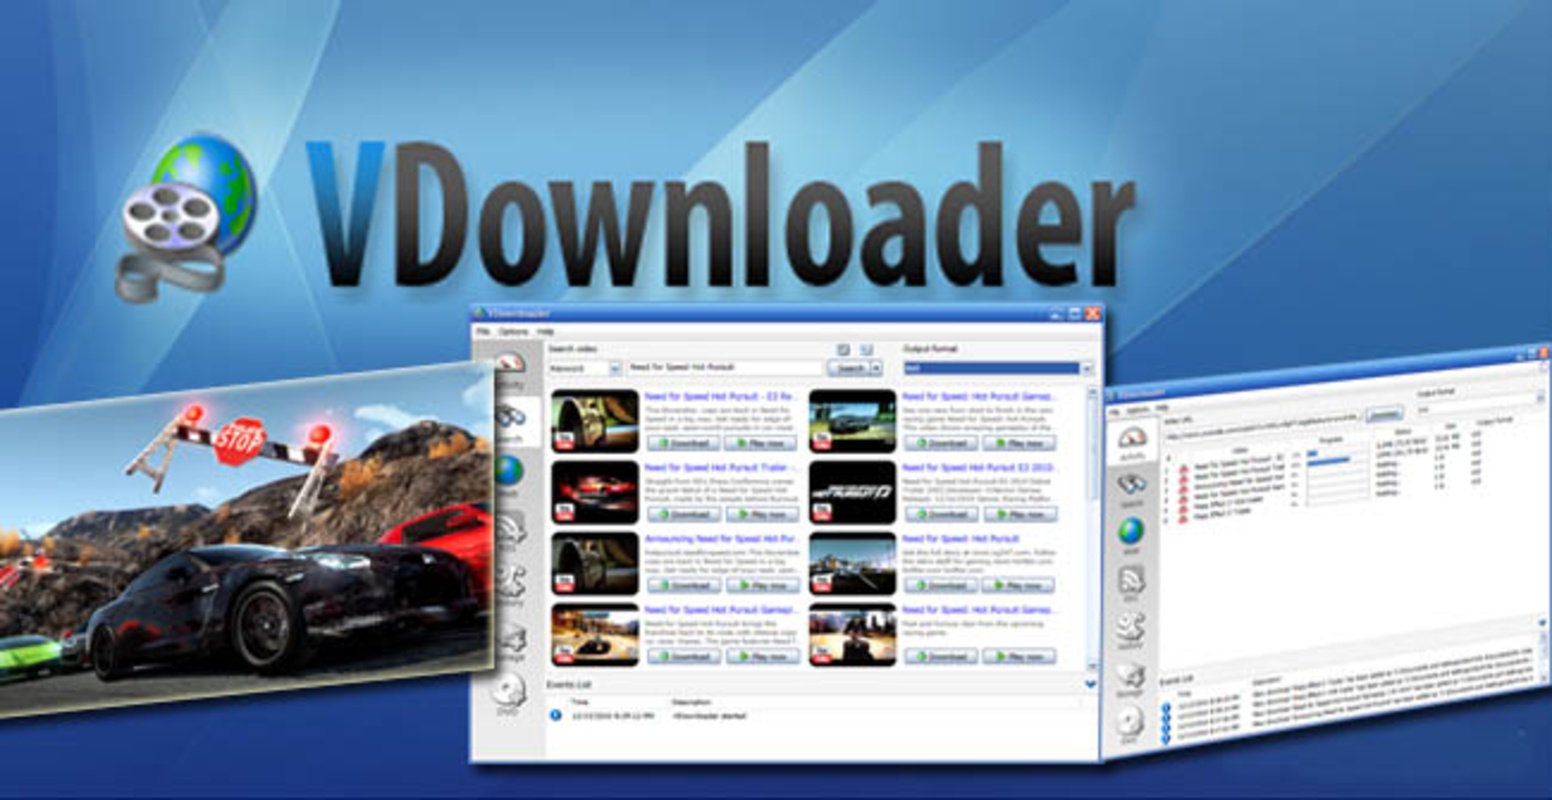 VDownloader 4.2.2001.0 for Windows Screenshot 1